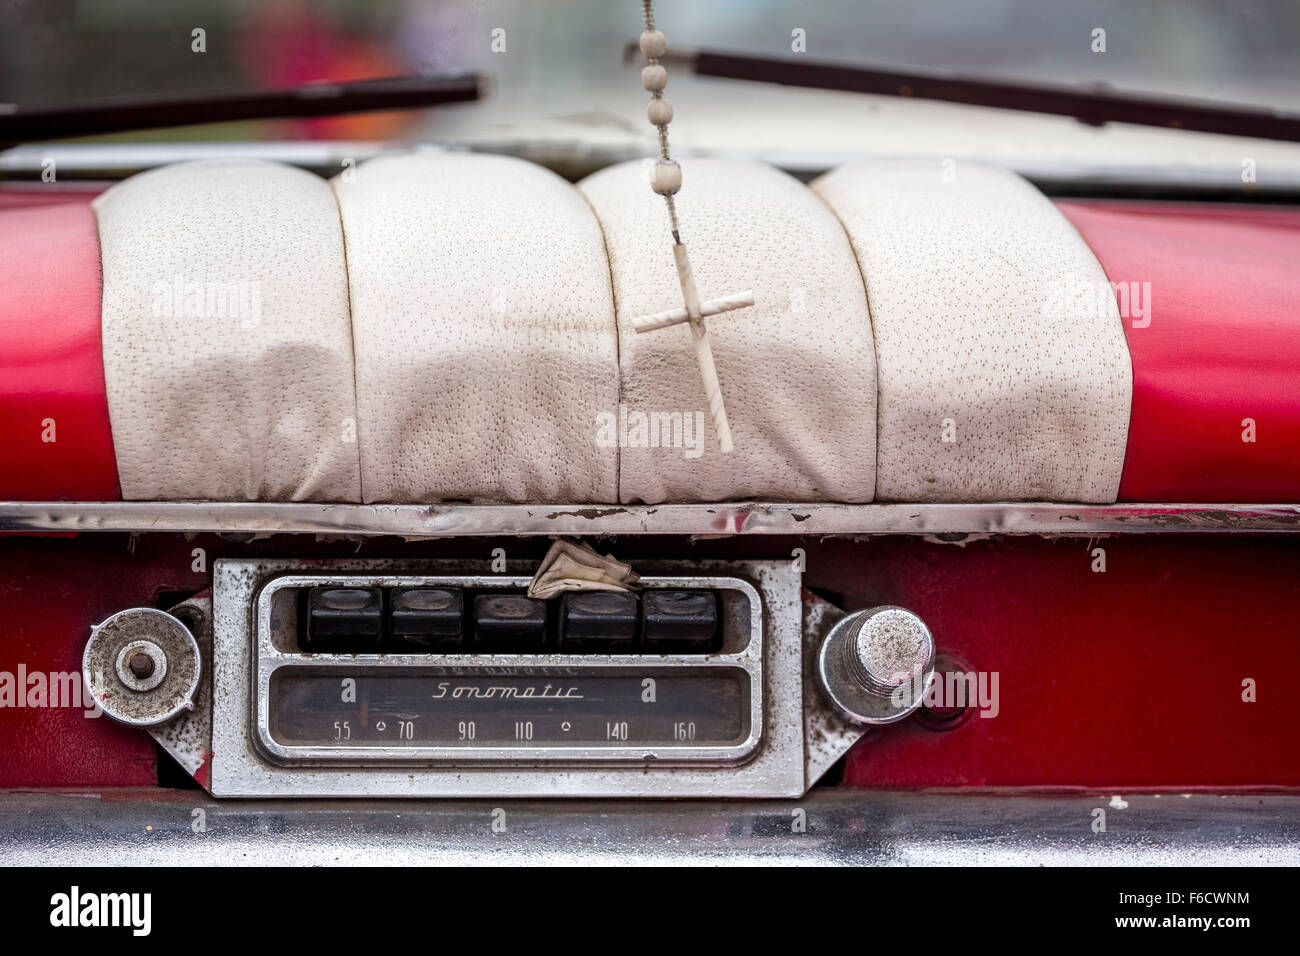 Sonnomatic vecchia auto radio nel cruscotto di una vecchia Buick road cruiser, vintage automobili sulle strade, età American, limousine Foto Stock